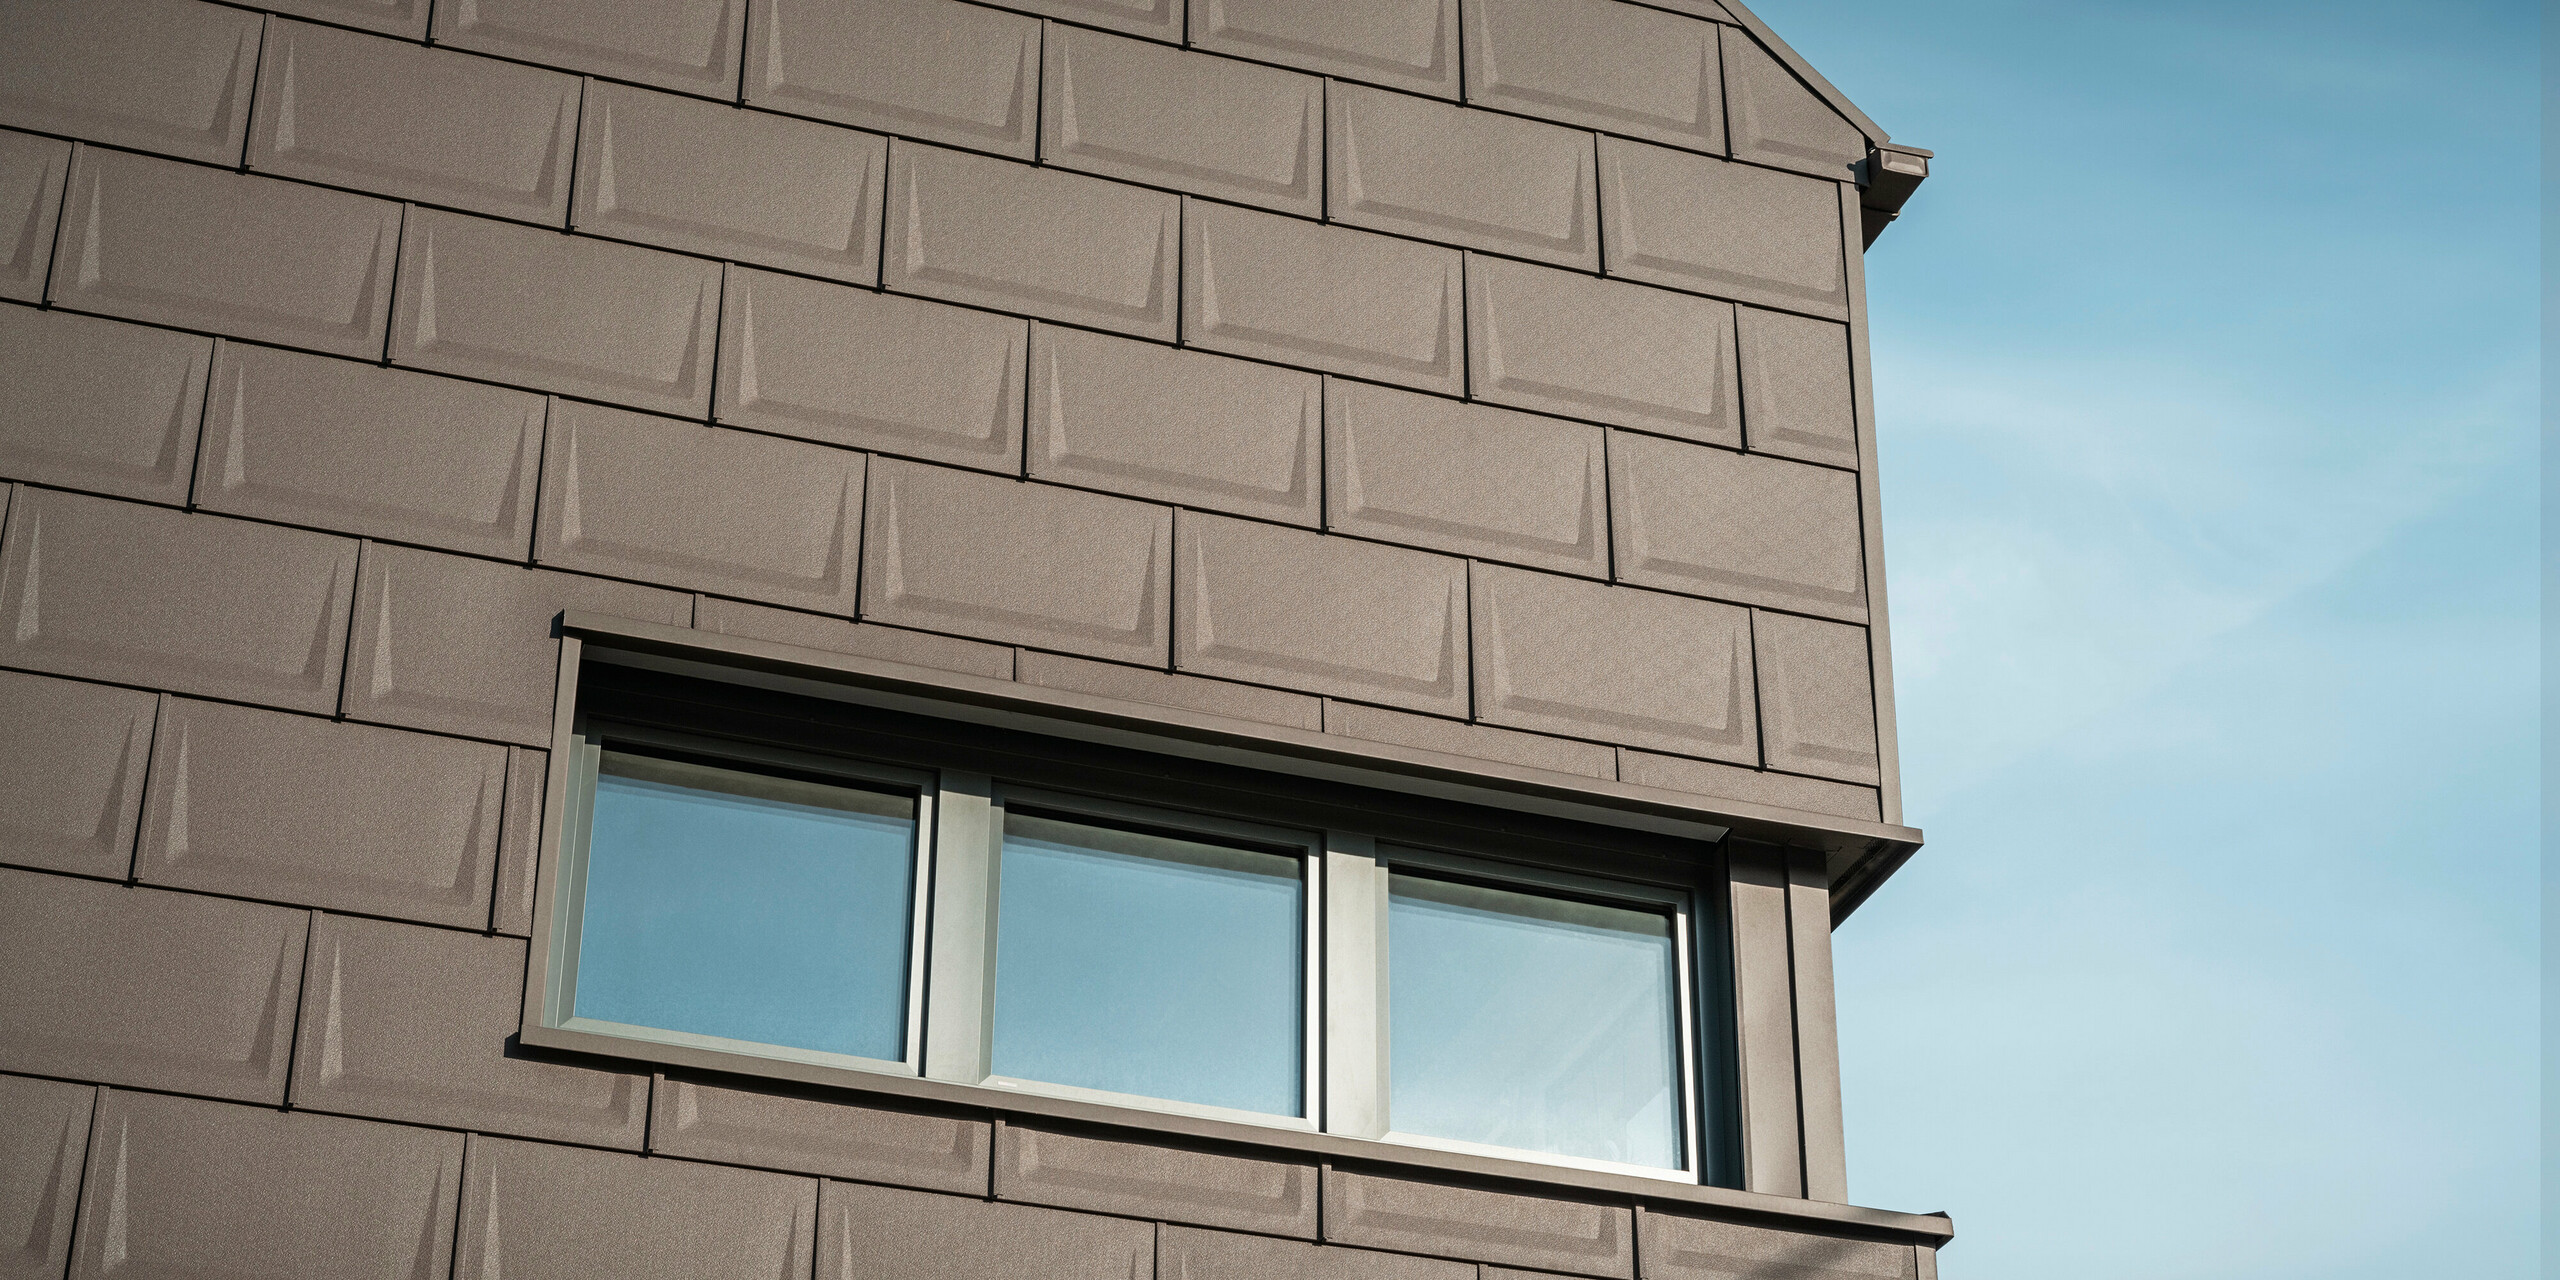 Nahaufnahme der Fassade eines Einfamilienhauses in Neukirchen, Österreich, gestaltet mit der innovativen PREFA Dachplatte R.16 in P.10 Braun, die als objektbezogene Sonderlösung sowohl für das Dach als auch für die Fassadengestaltung des Obergeschosses verwendet wird. Diese einzigartige Anwendung sorgt für eine harmonische und ästhetische Optik und unterstreicht die Vielseitigkeit der PREFA Aluminiumprodukte. Die einheitliche Farbgebung und das durchdachte Designkonzept des Gebäudes betonen die vielseitigen Gestaltungsmöglichkeiten von PREFA.